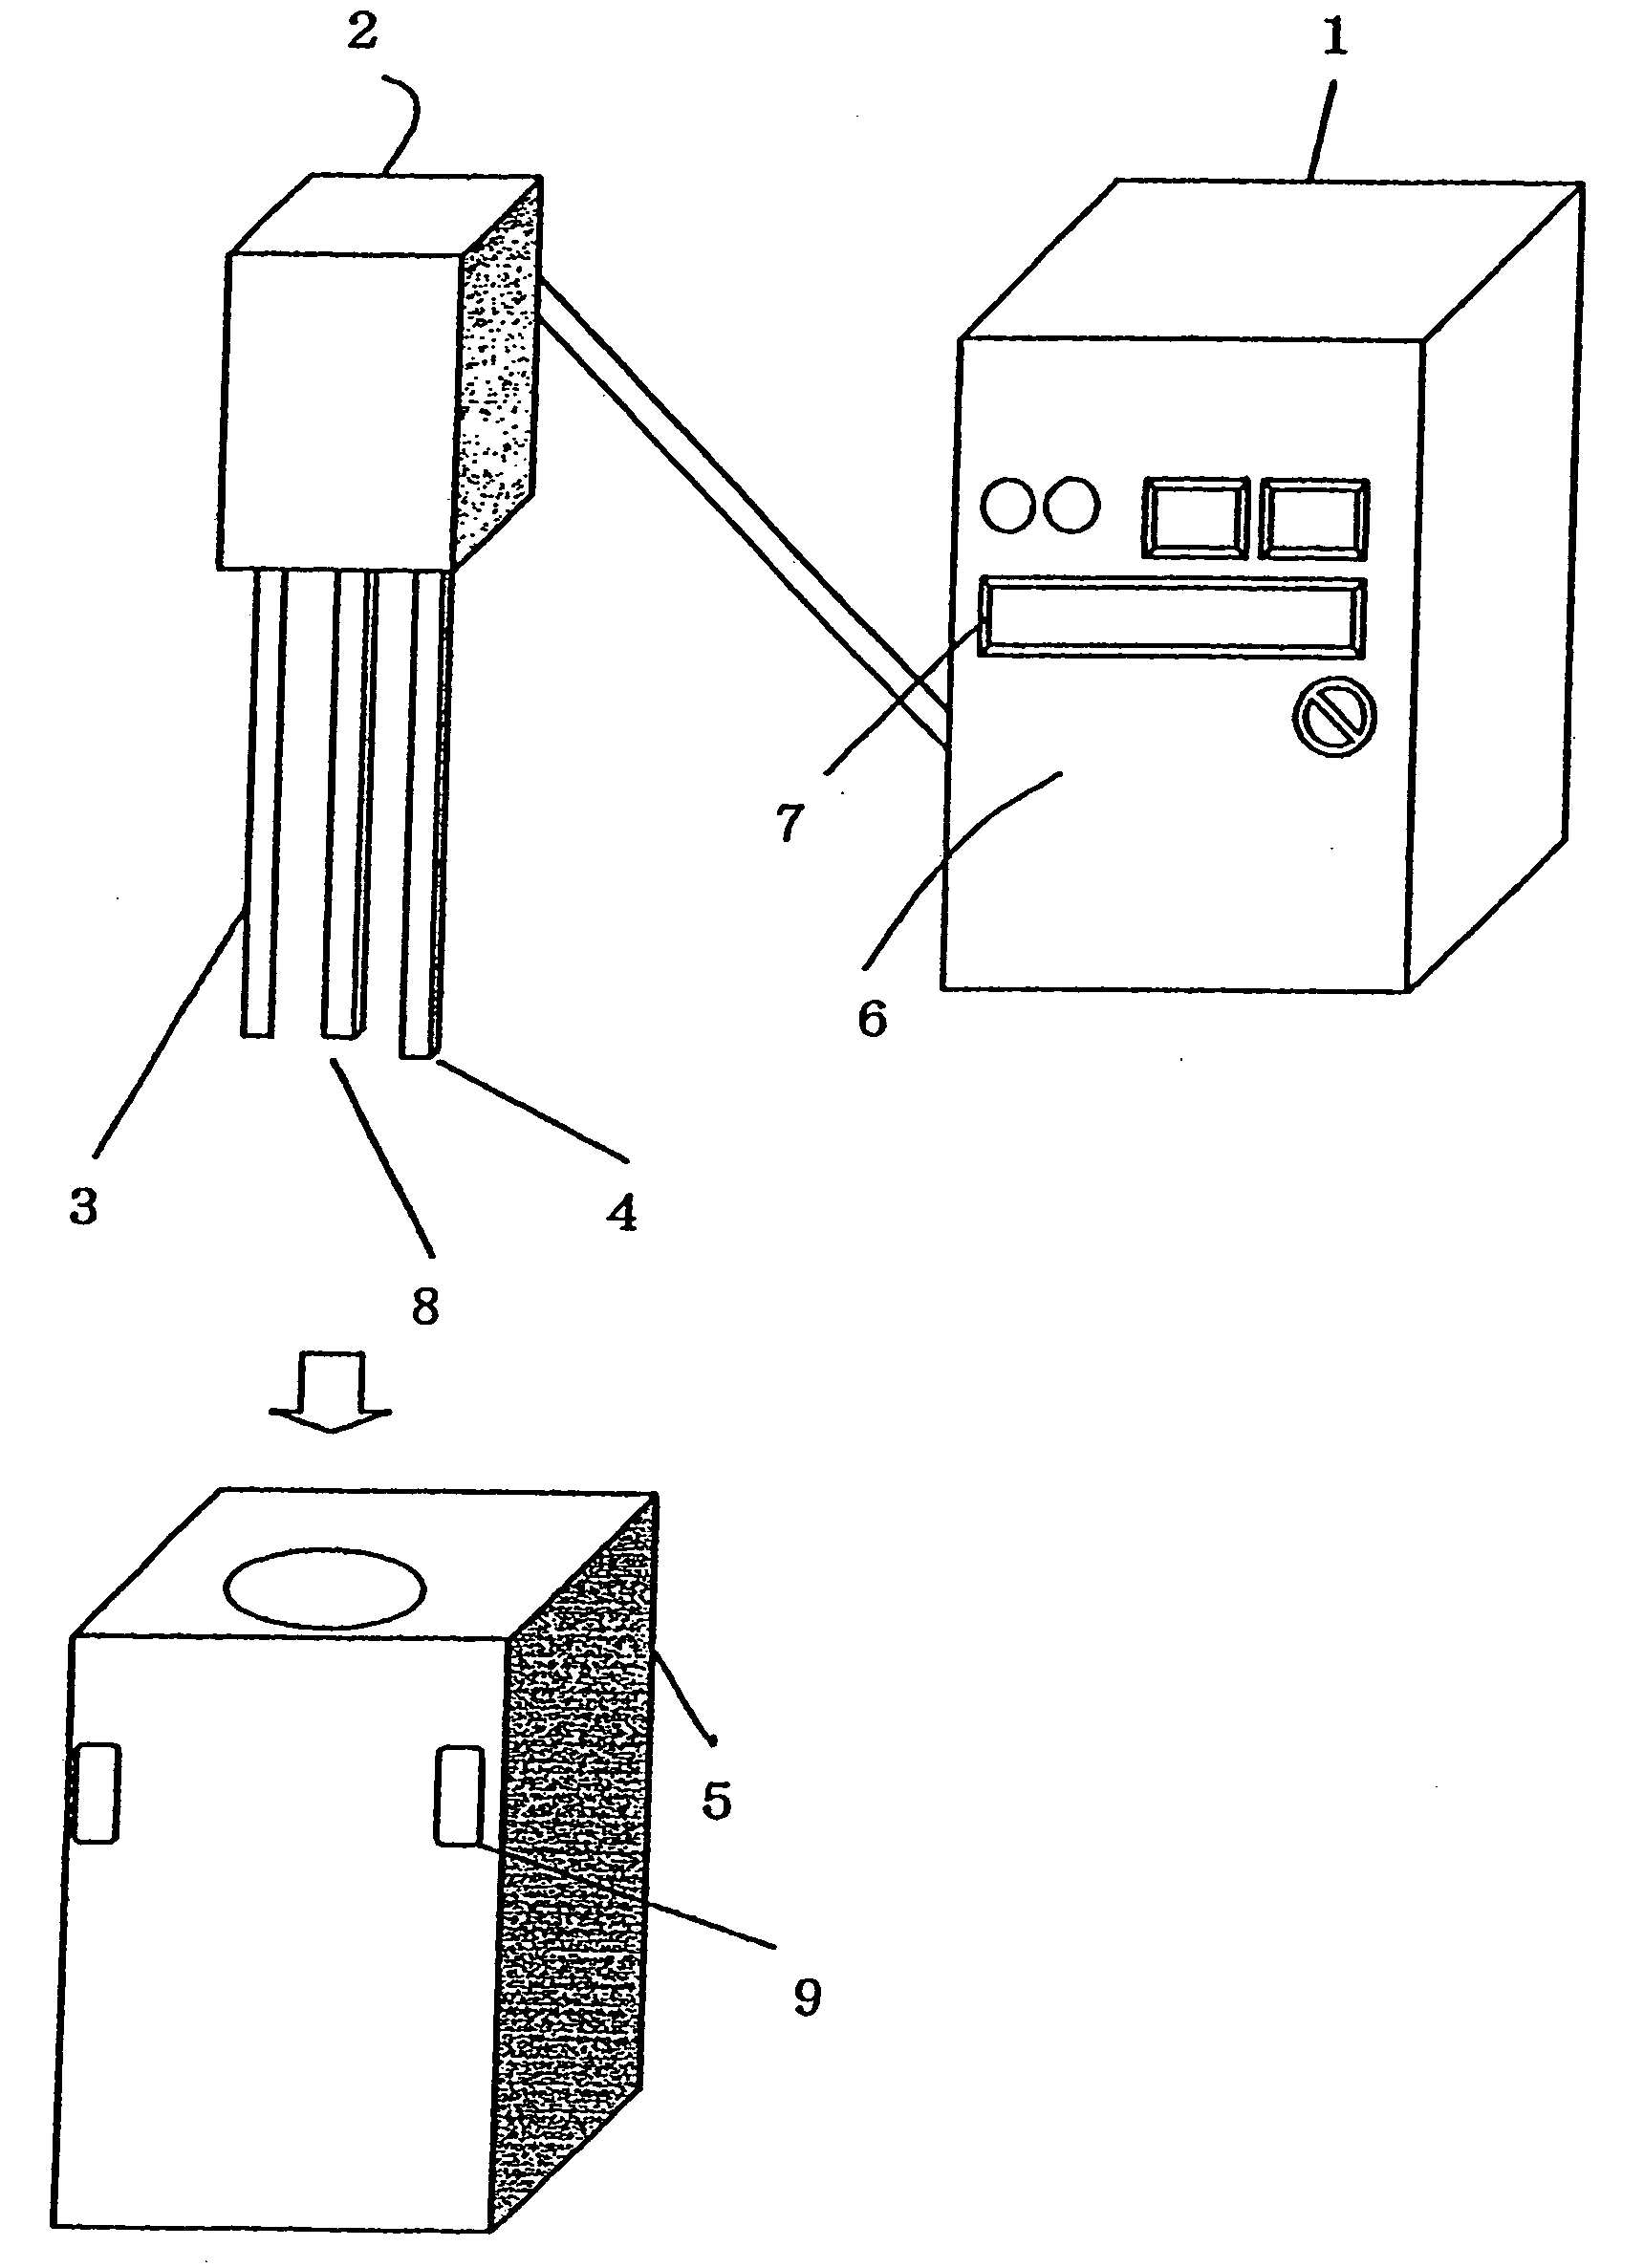 Method for disposing PCB through electrolysis